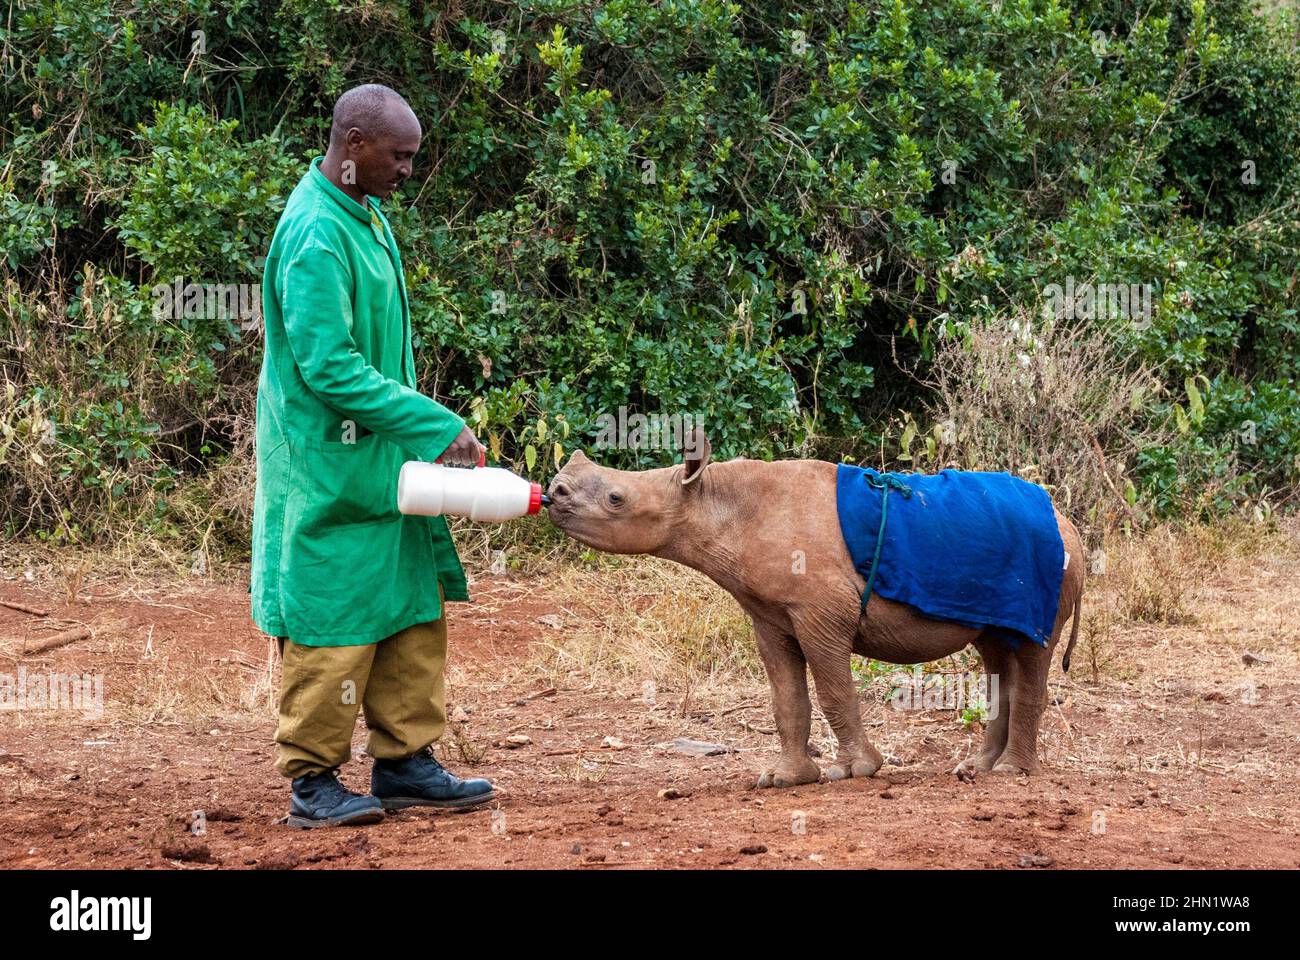 Rhinoceros nero orfano, bicornis di Diceros, bevendo da una bottiglia tenuta da un custode all'orfanotrofio dell'Elefante di Sheldrick, Nairobi, Kenya Foto Stock